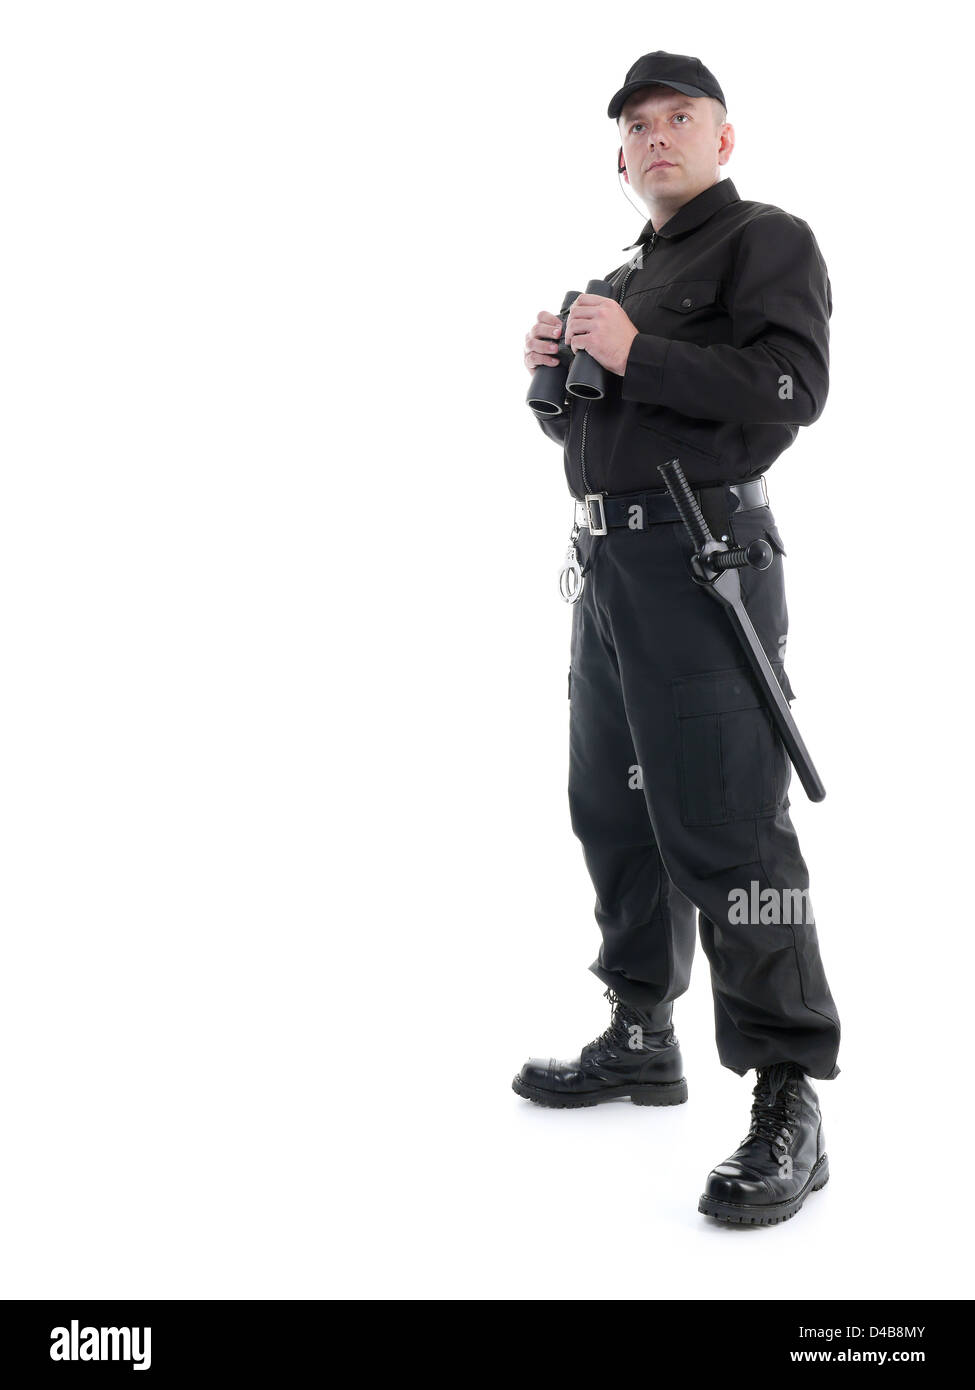 L'homme vêtu de noir de sécurité permanent uniforme avec des jumelles, shot on white Banque D'Images